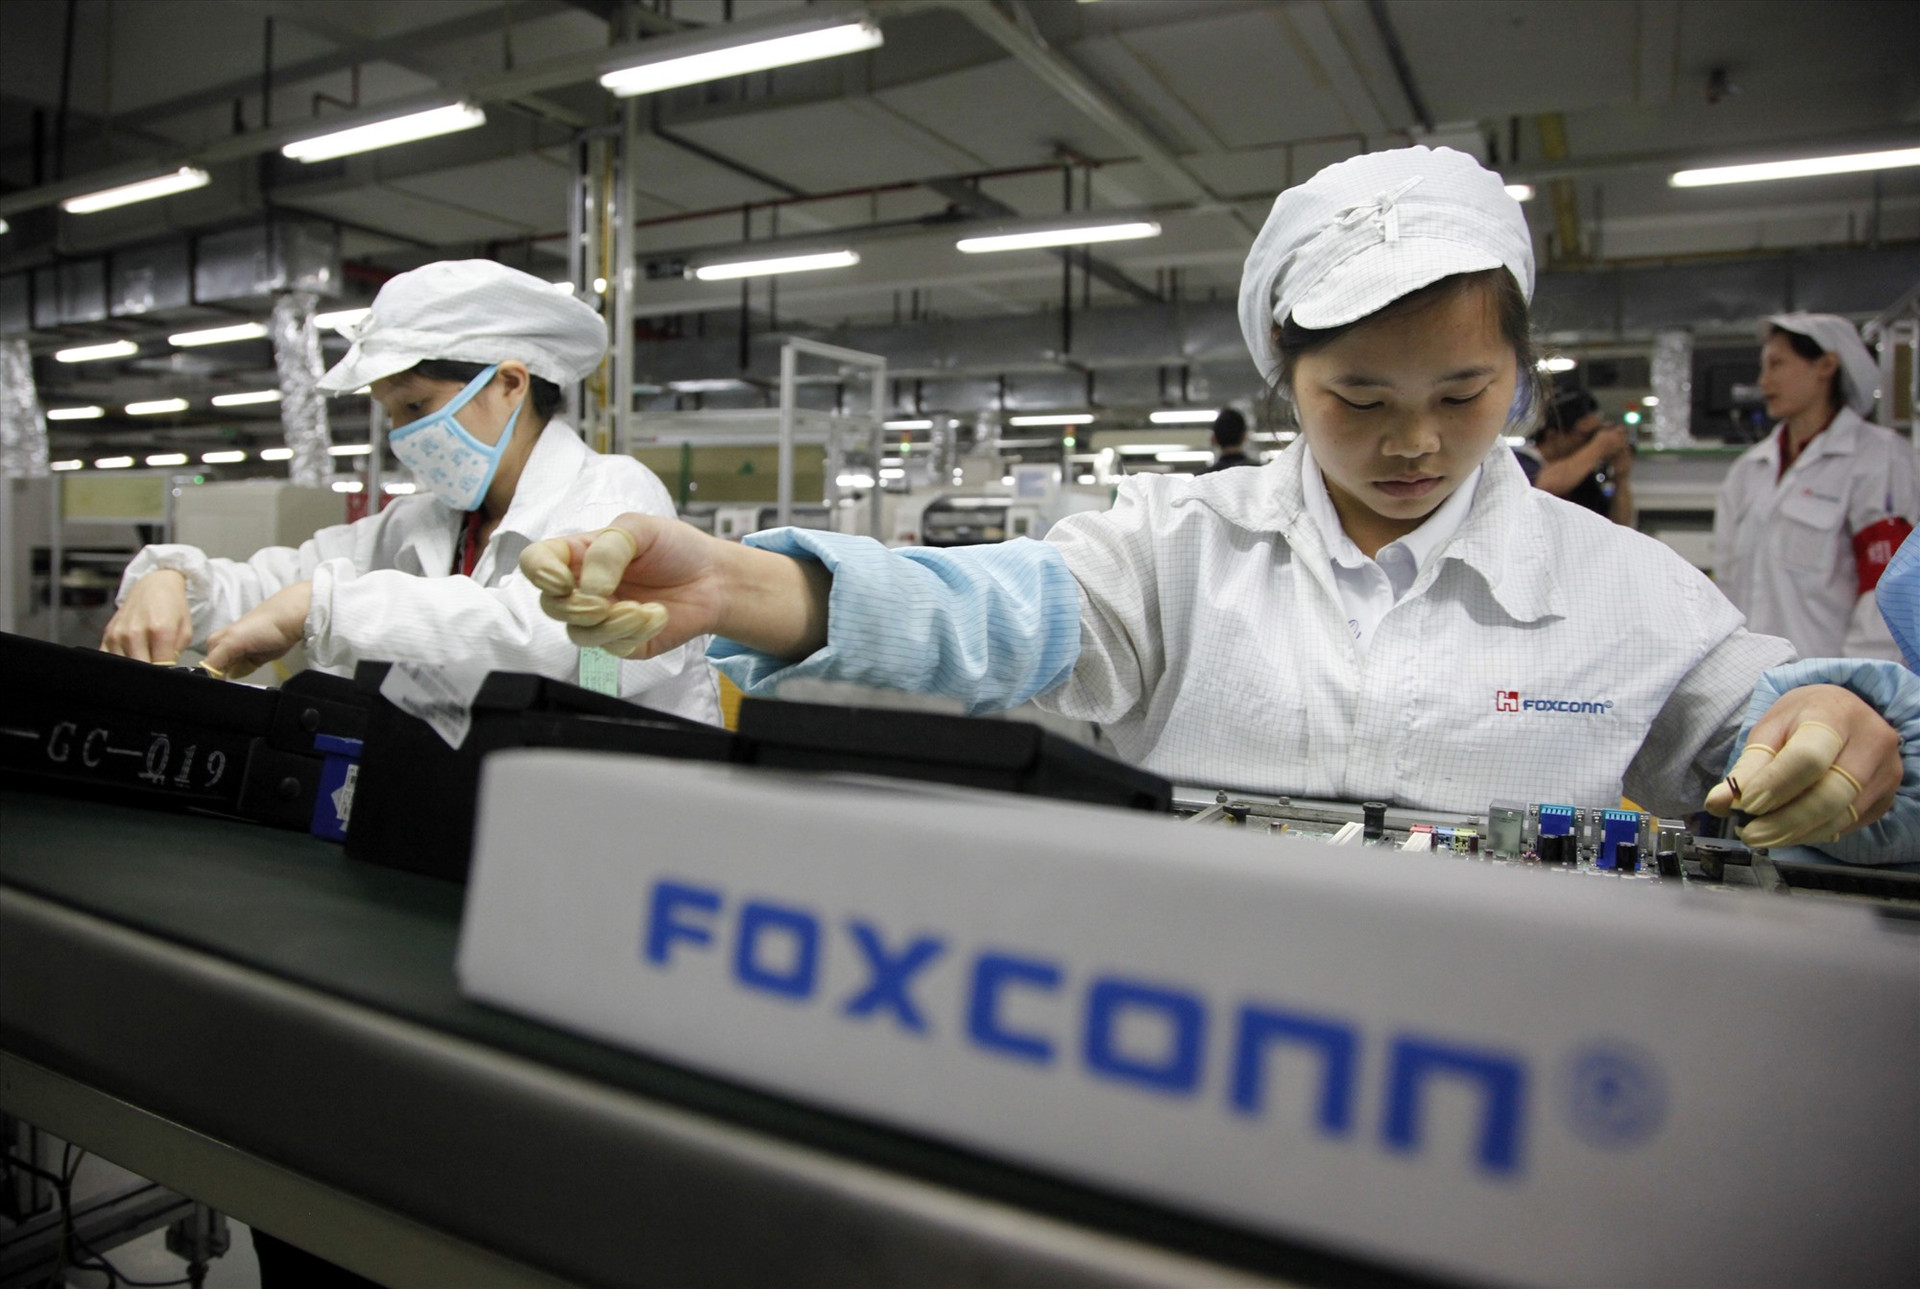 Nhà máy Foxconn ở Trịnh Châu, Trung Quốc đã bắt đầu tuyển dụng nhân công quy mô lớn, tăng mức lương trung bình lên 5.000 nhân dân tệ. Ảnh: Getty Images